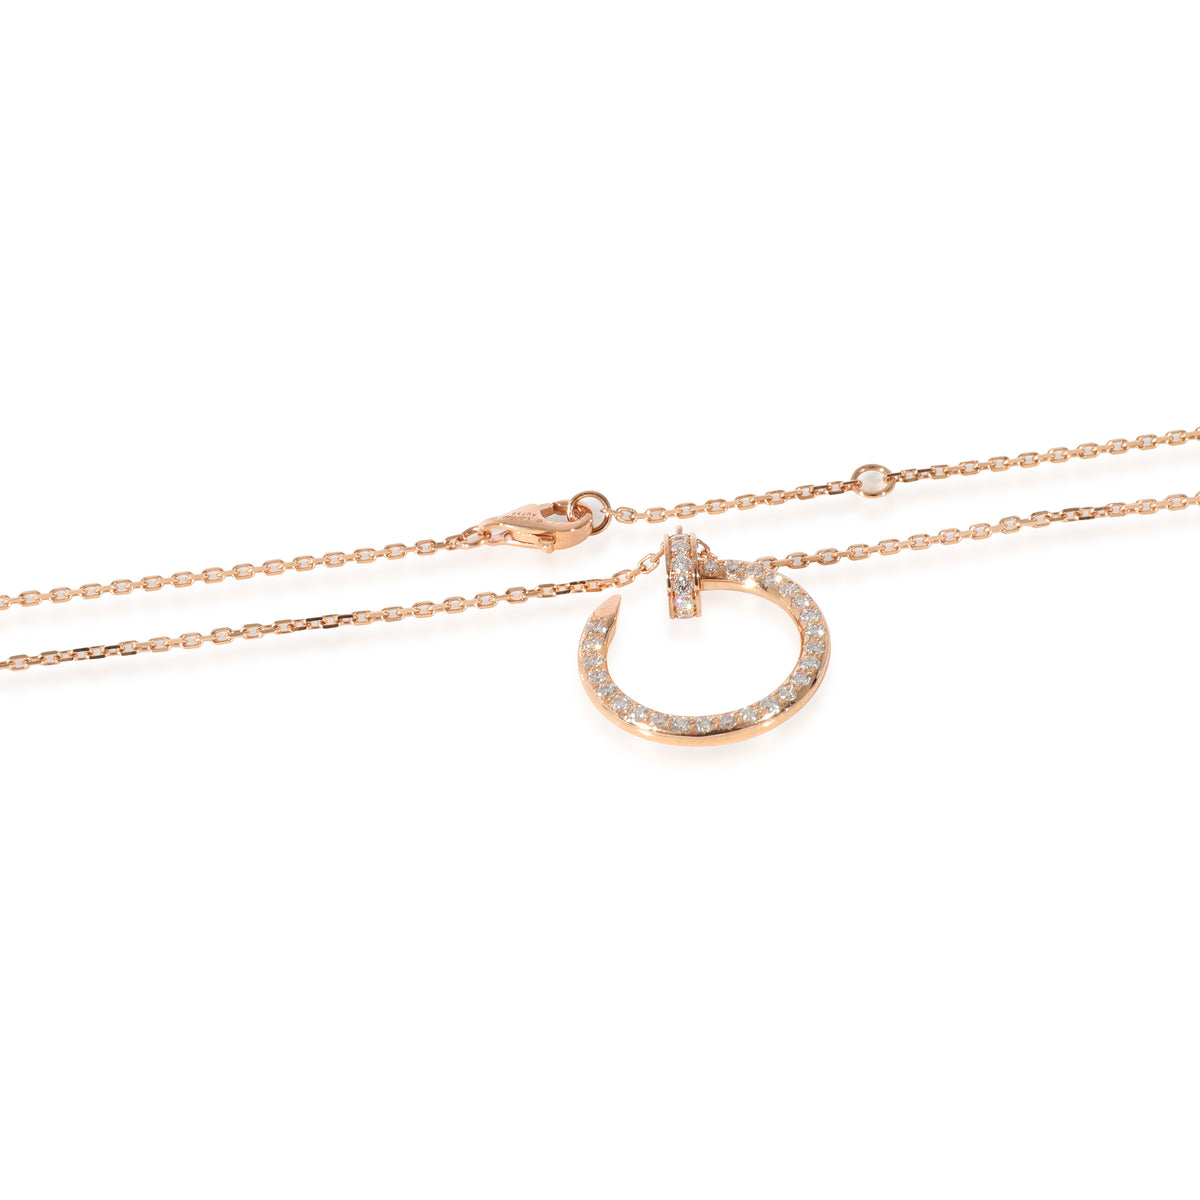 Cartier Juste un Clou Diamond Necklace in 18K Rose Gold 0.38 CTW